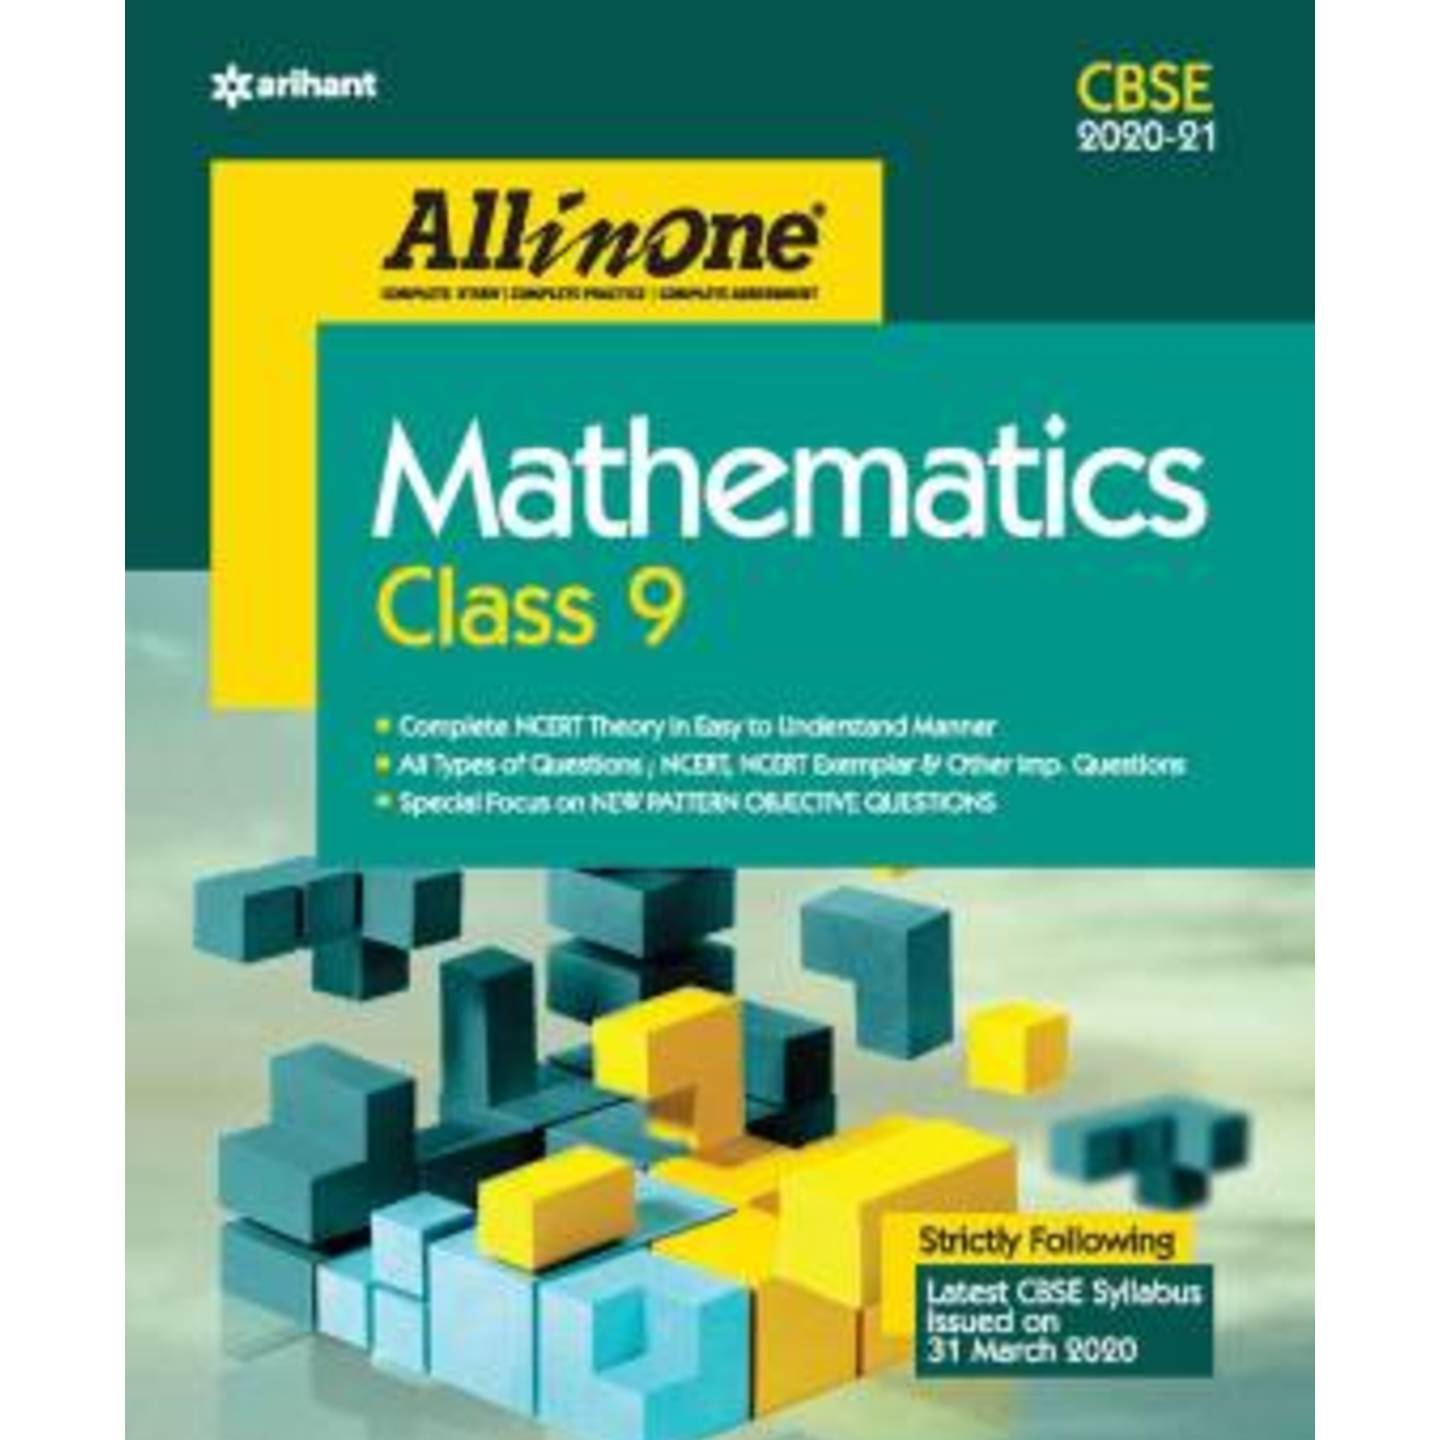 ARIHANT Cbse All in One Mathematics Class 9